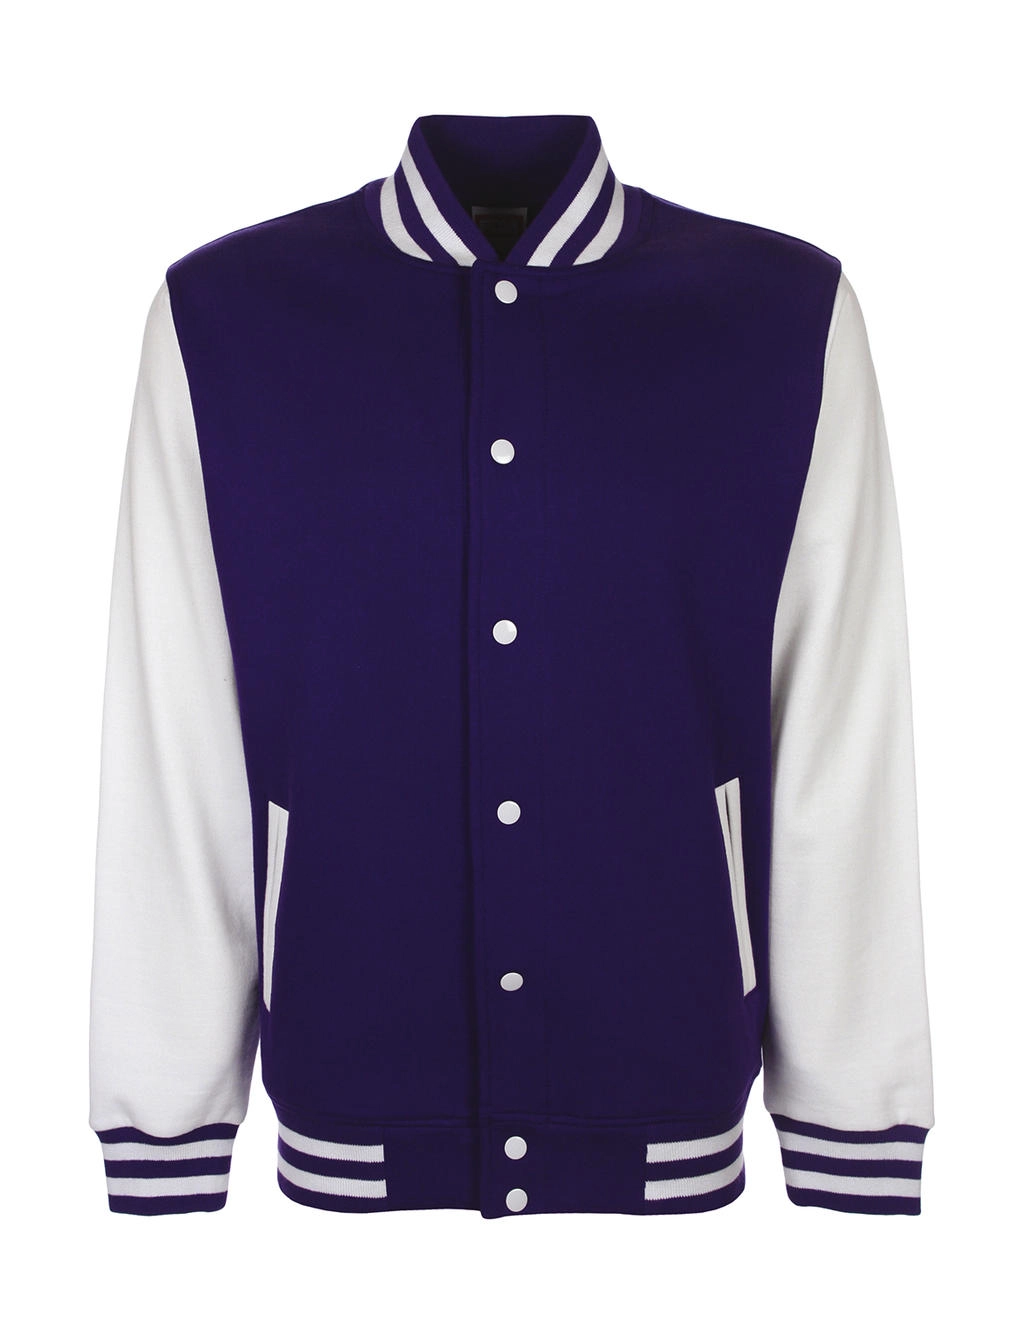 Varsity Jacket zum Besticken und Bedrucken in der Farbe Purple/White mit Ihren Logo, Schriftzug oder Motiv.